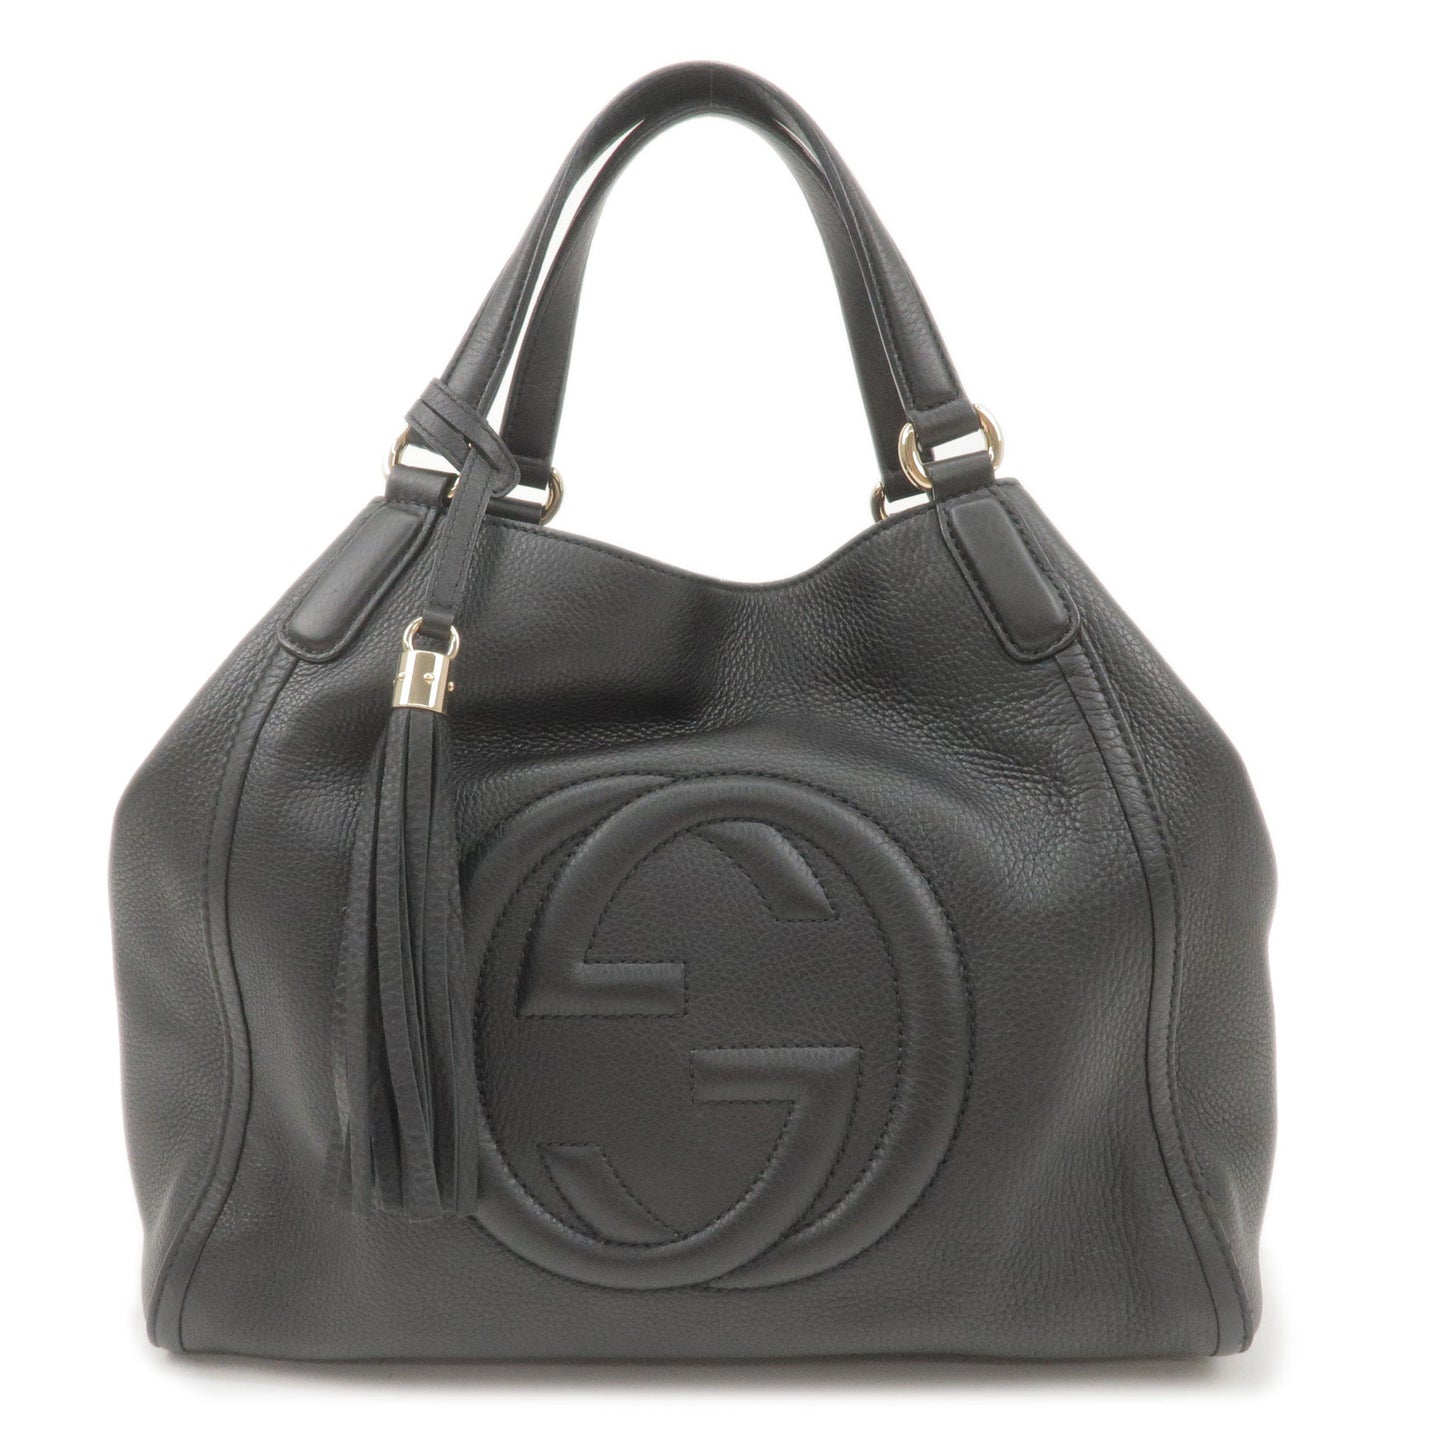 Gucci Soho Tote Bag Review 